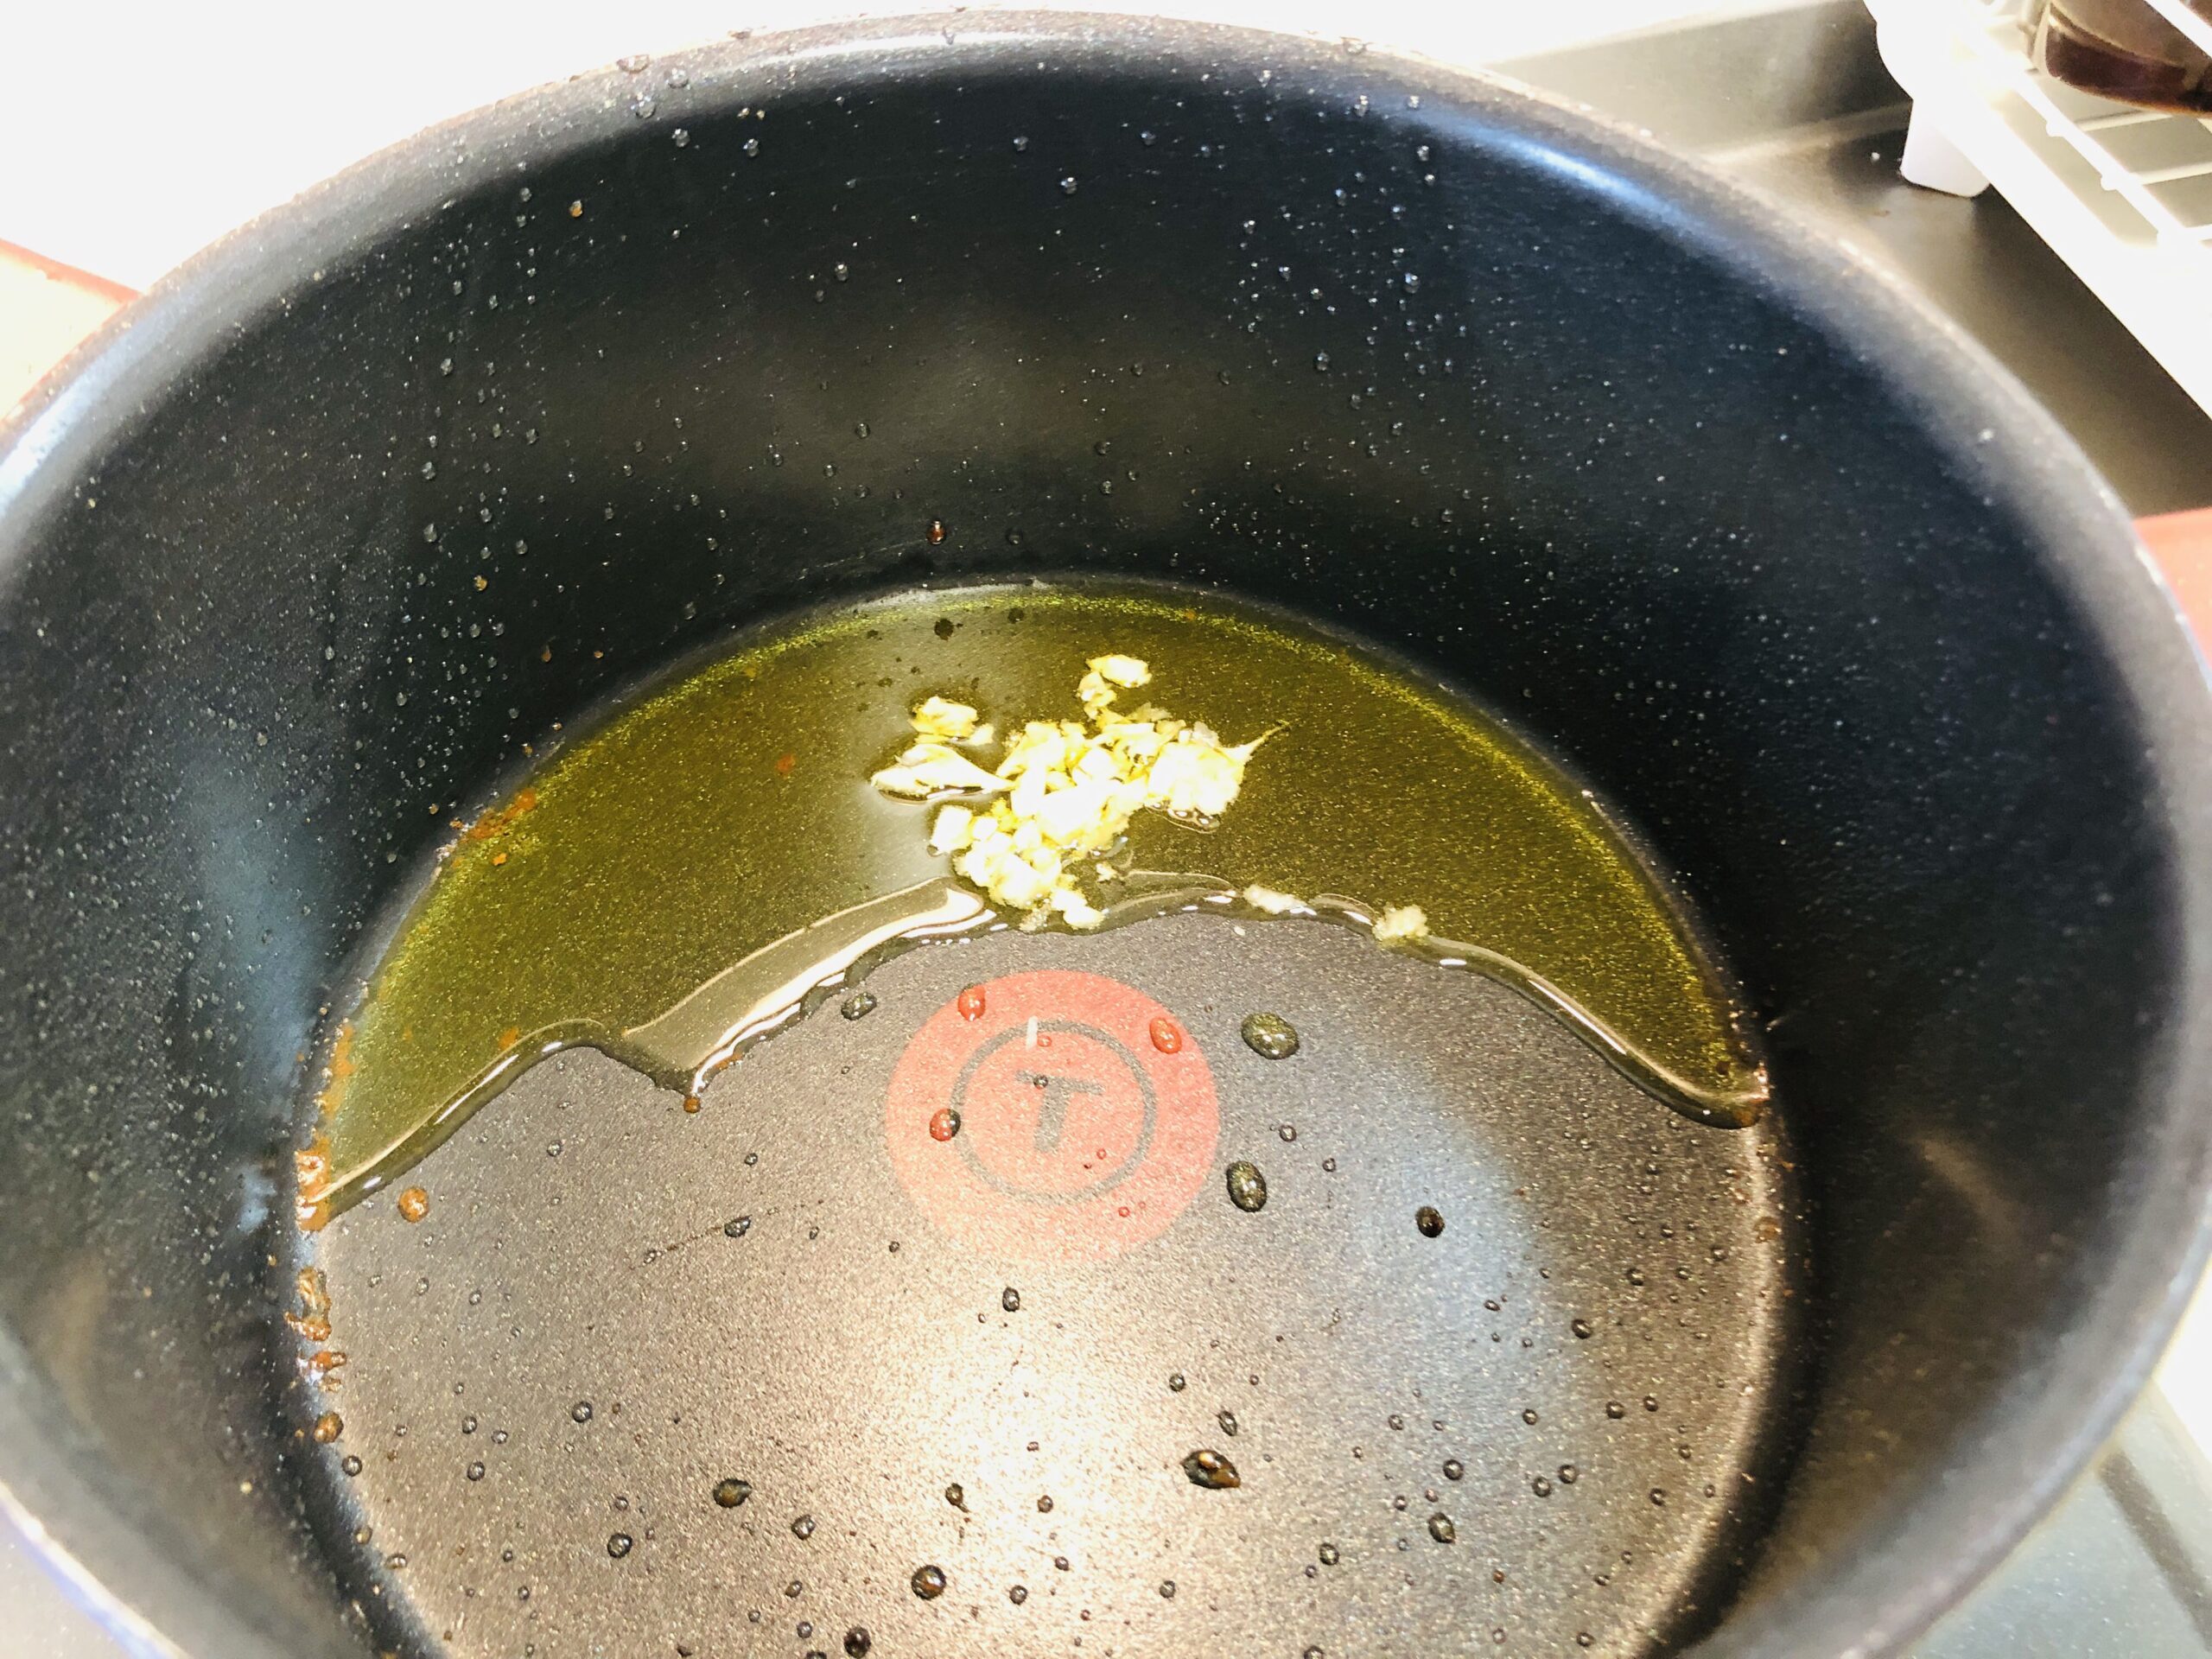 ミンチ肉を焼いた鍋にニンニクのみじん切りを入れた状態の画像です